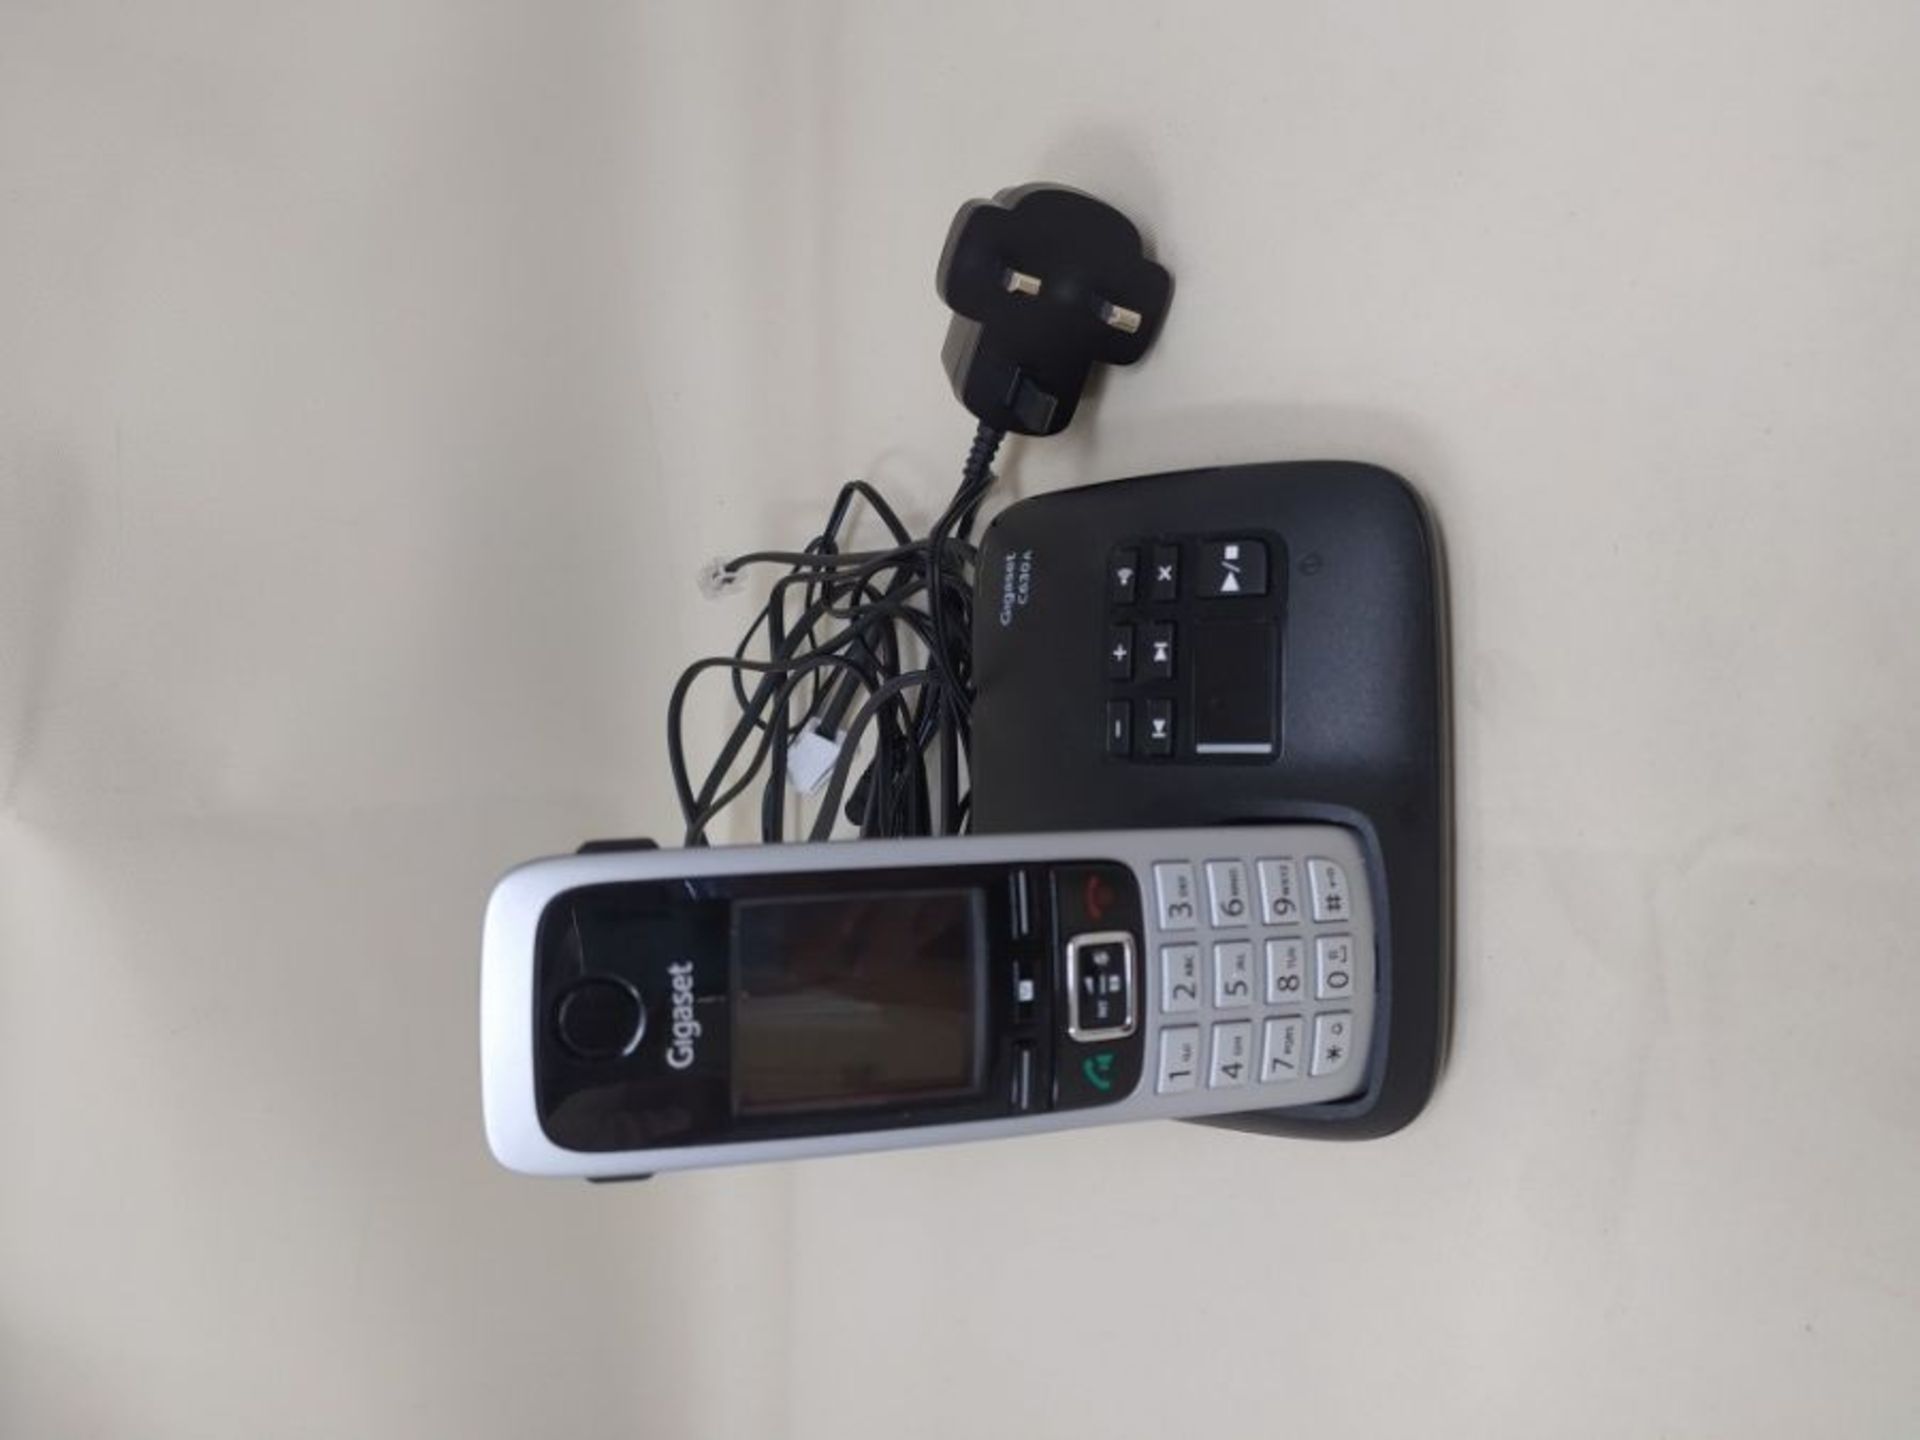 G�i�g�a�s�e�t� �C�6�3�0�A� �S�I�N�G�L�E� �-� �P�r�e�m�i�u�m� �C�o�r�d�l�e�s�s� �H�o�m�e� �P�h�o�n�e� - Image 2 of 2